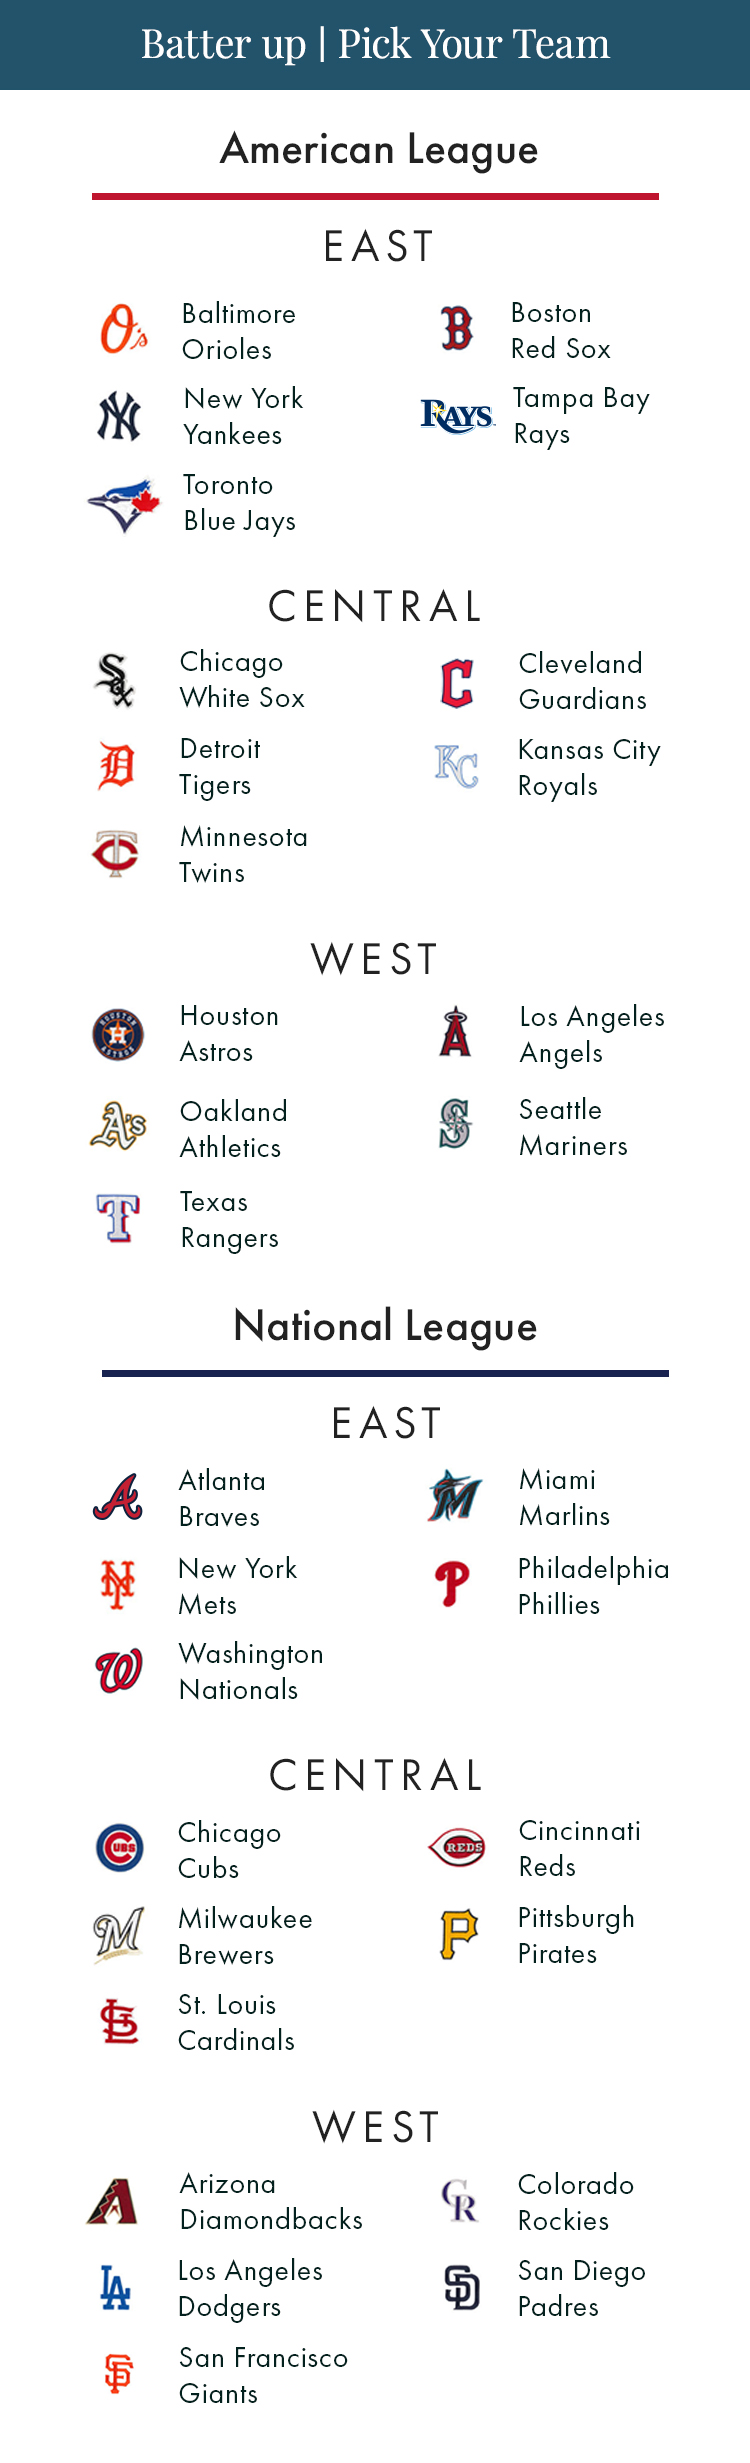 Batter Up/Pick Your Team - MLB Teams